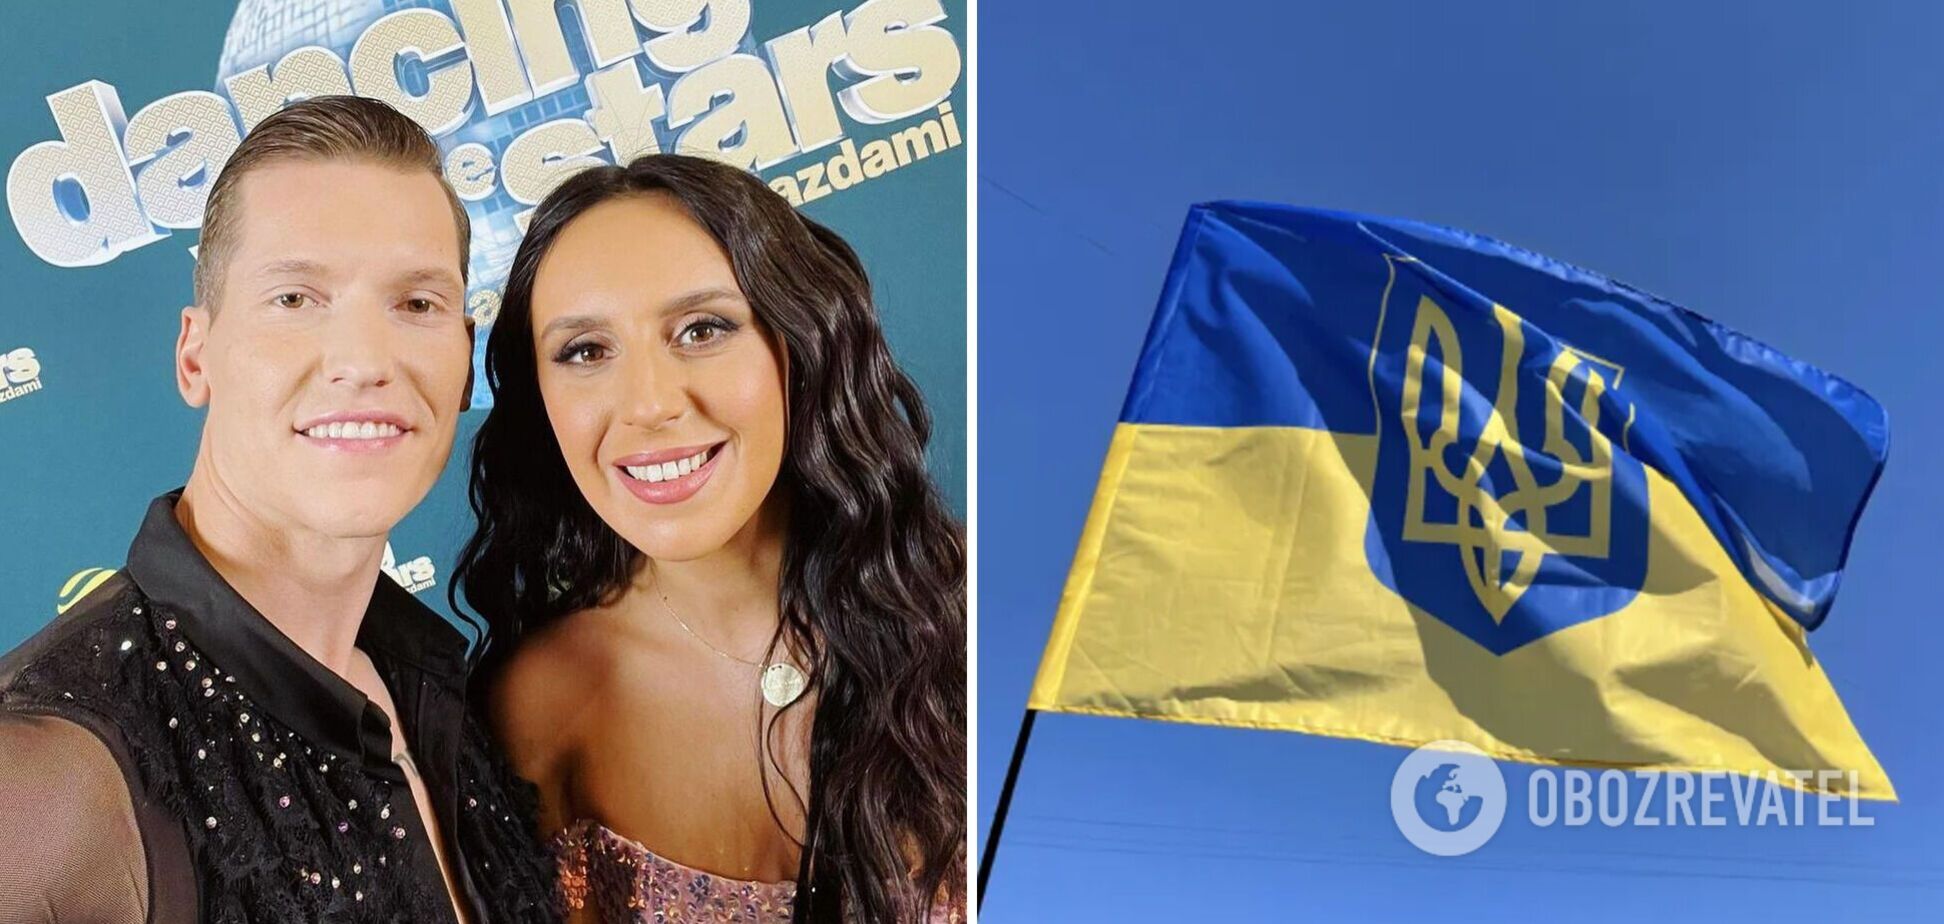 Джамала назвала головну умову участі в польських 'Танцях': є мотивація залишитися якнайдовше, щоб допомогти Україні